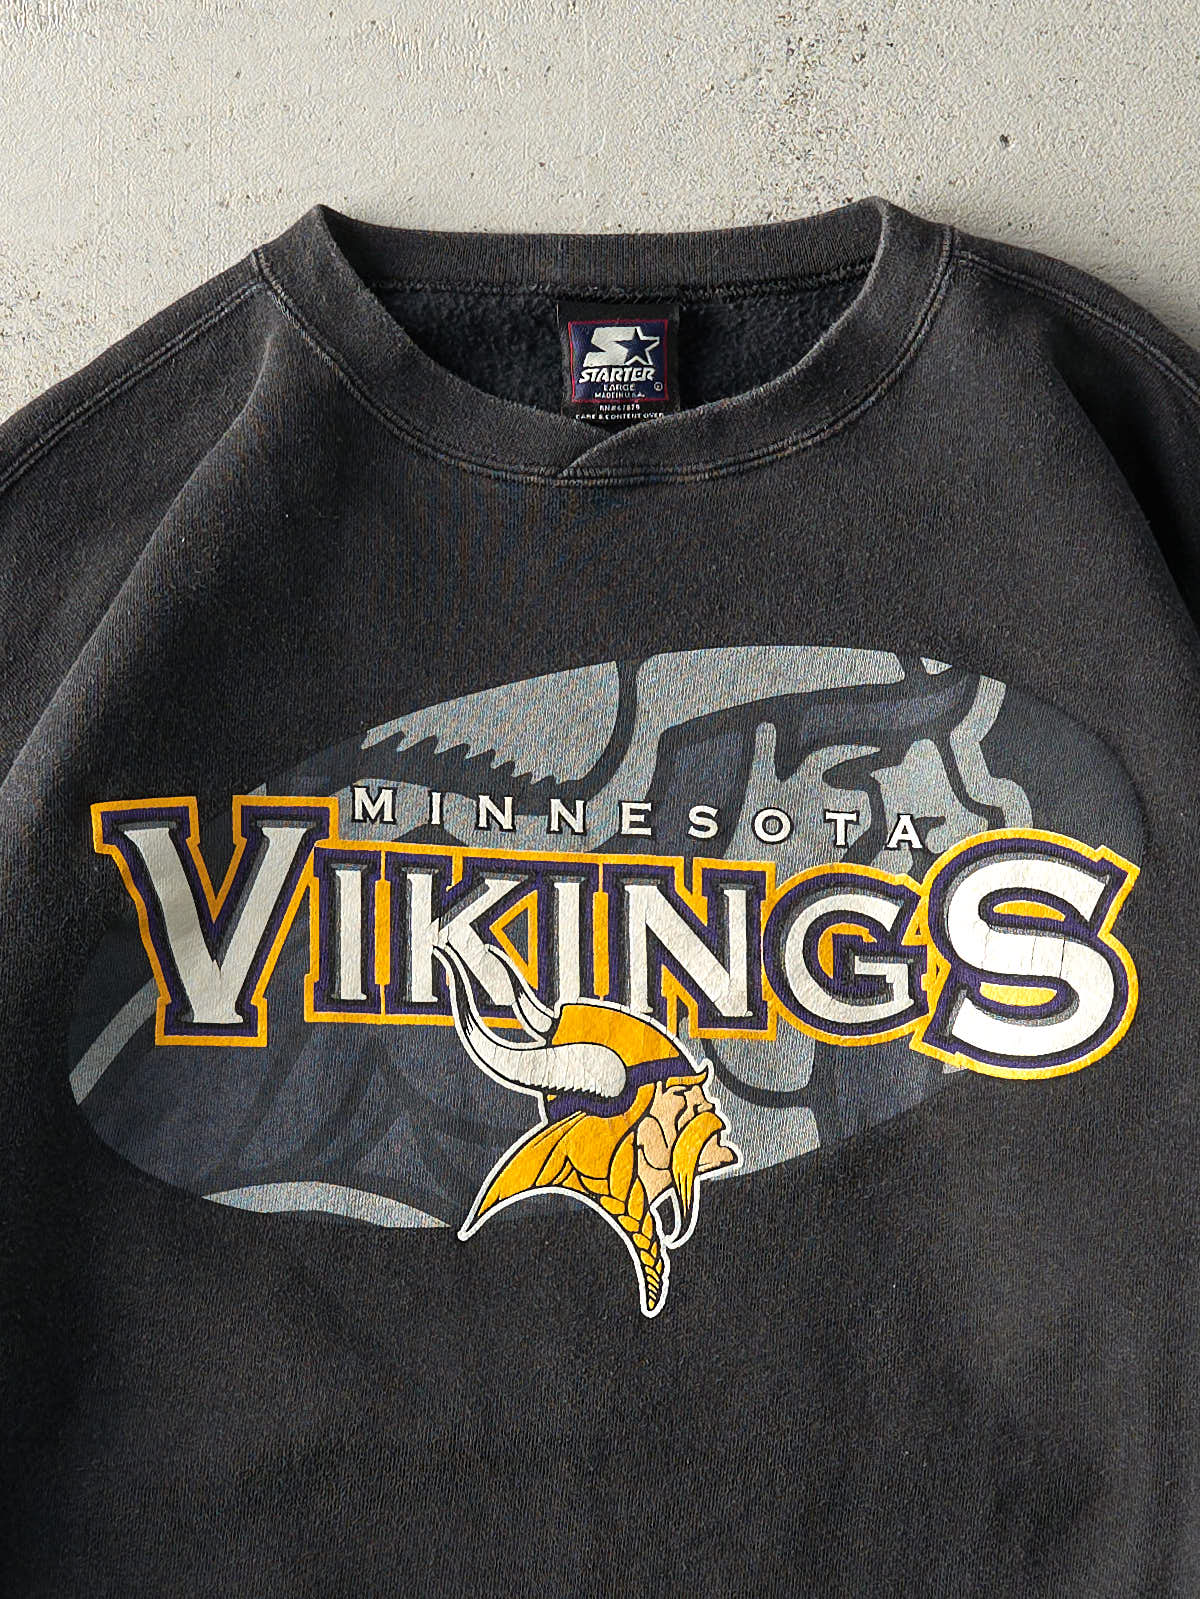 Vintage 90s Black Minnesota Vikings Crewneck (M)